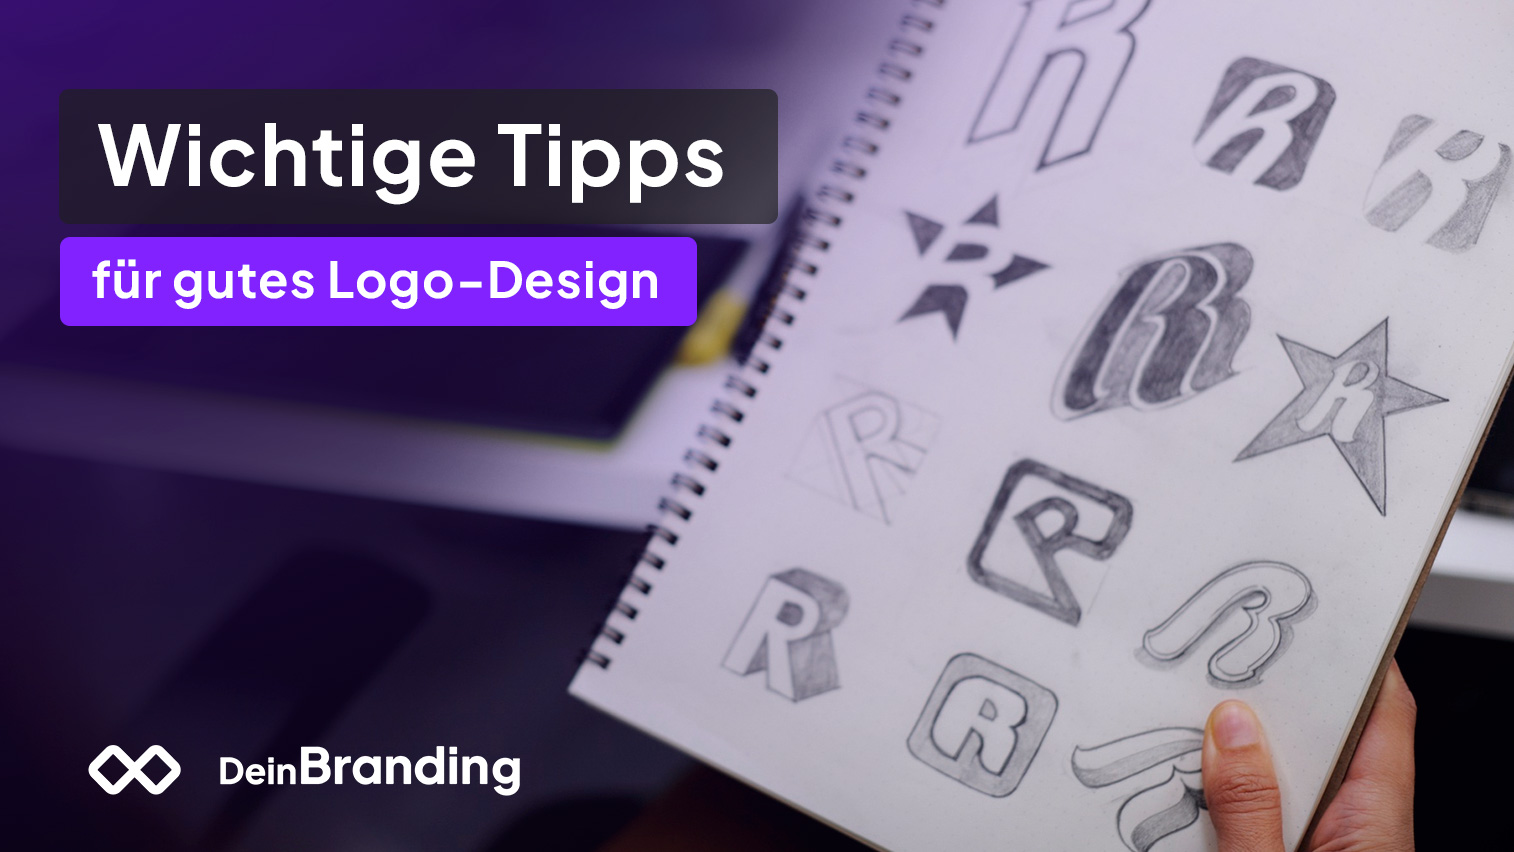 Wichtige Tipps für gutes Logo-Design